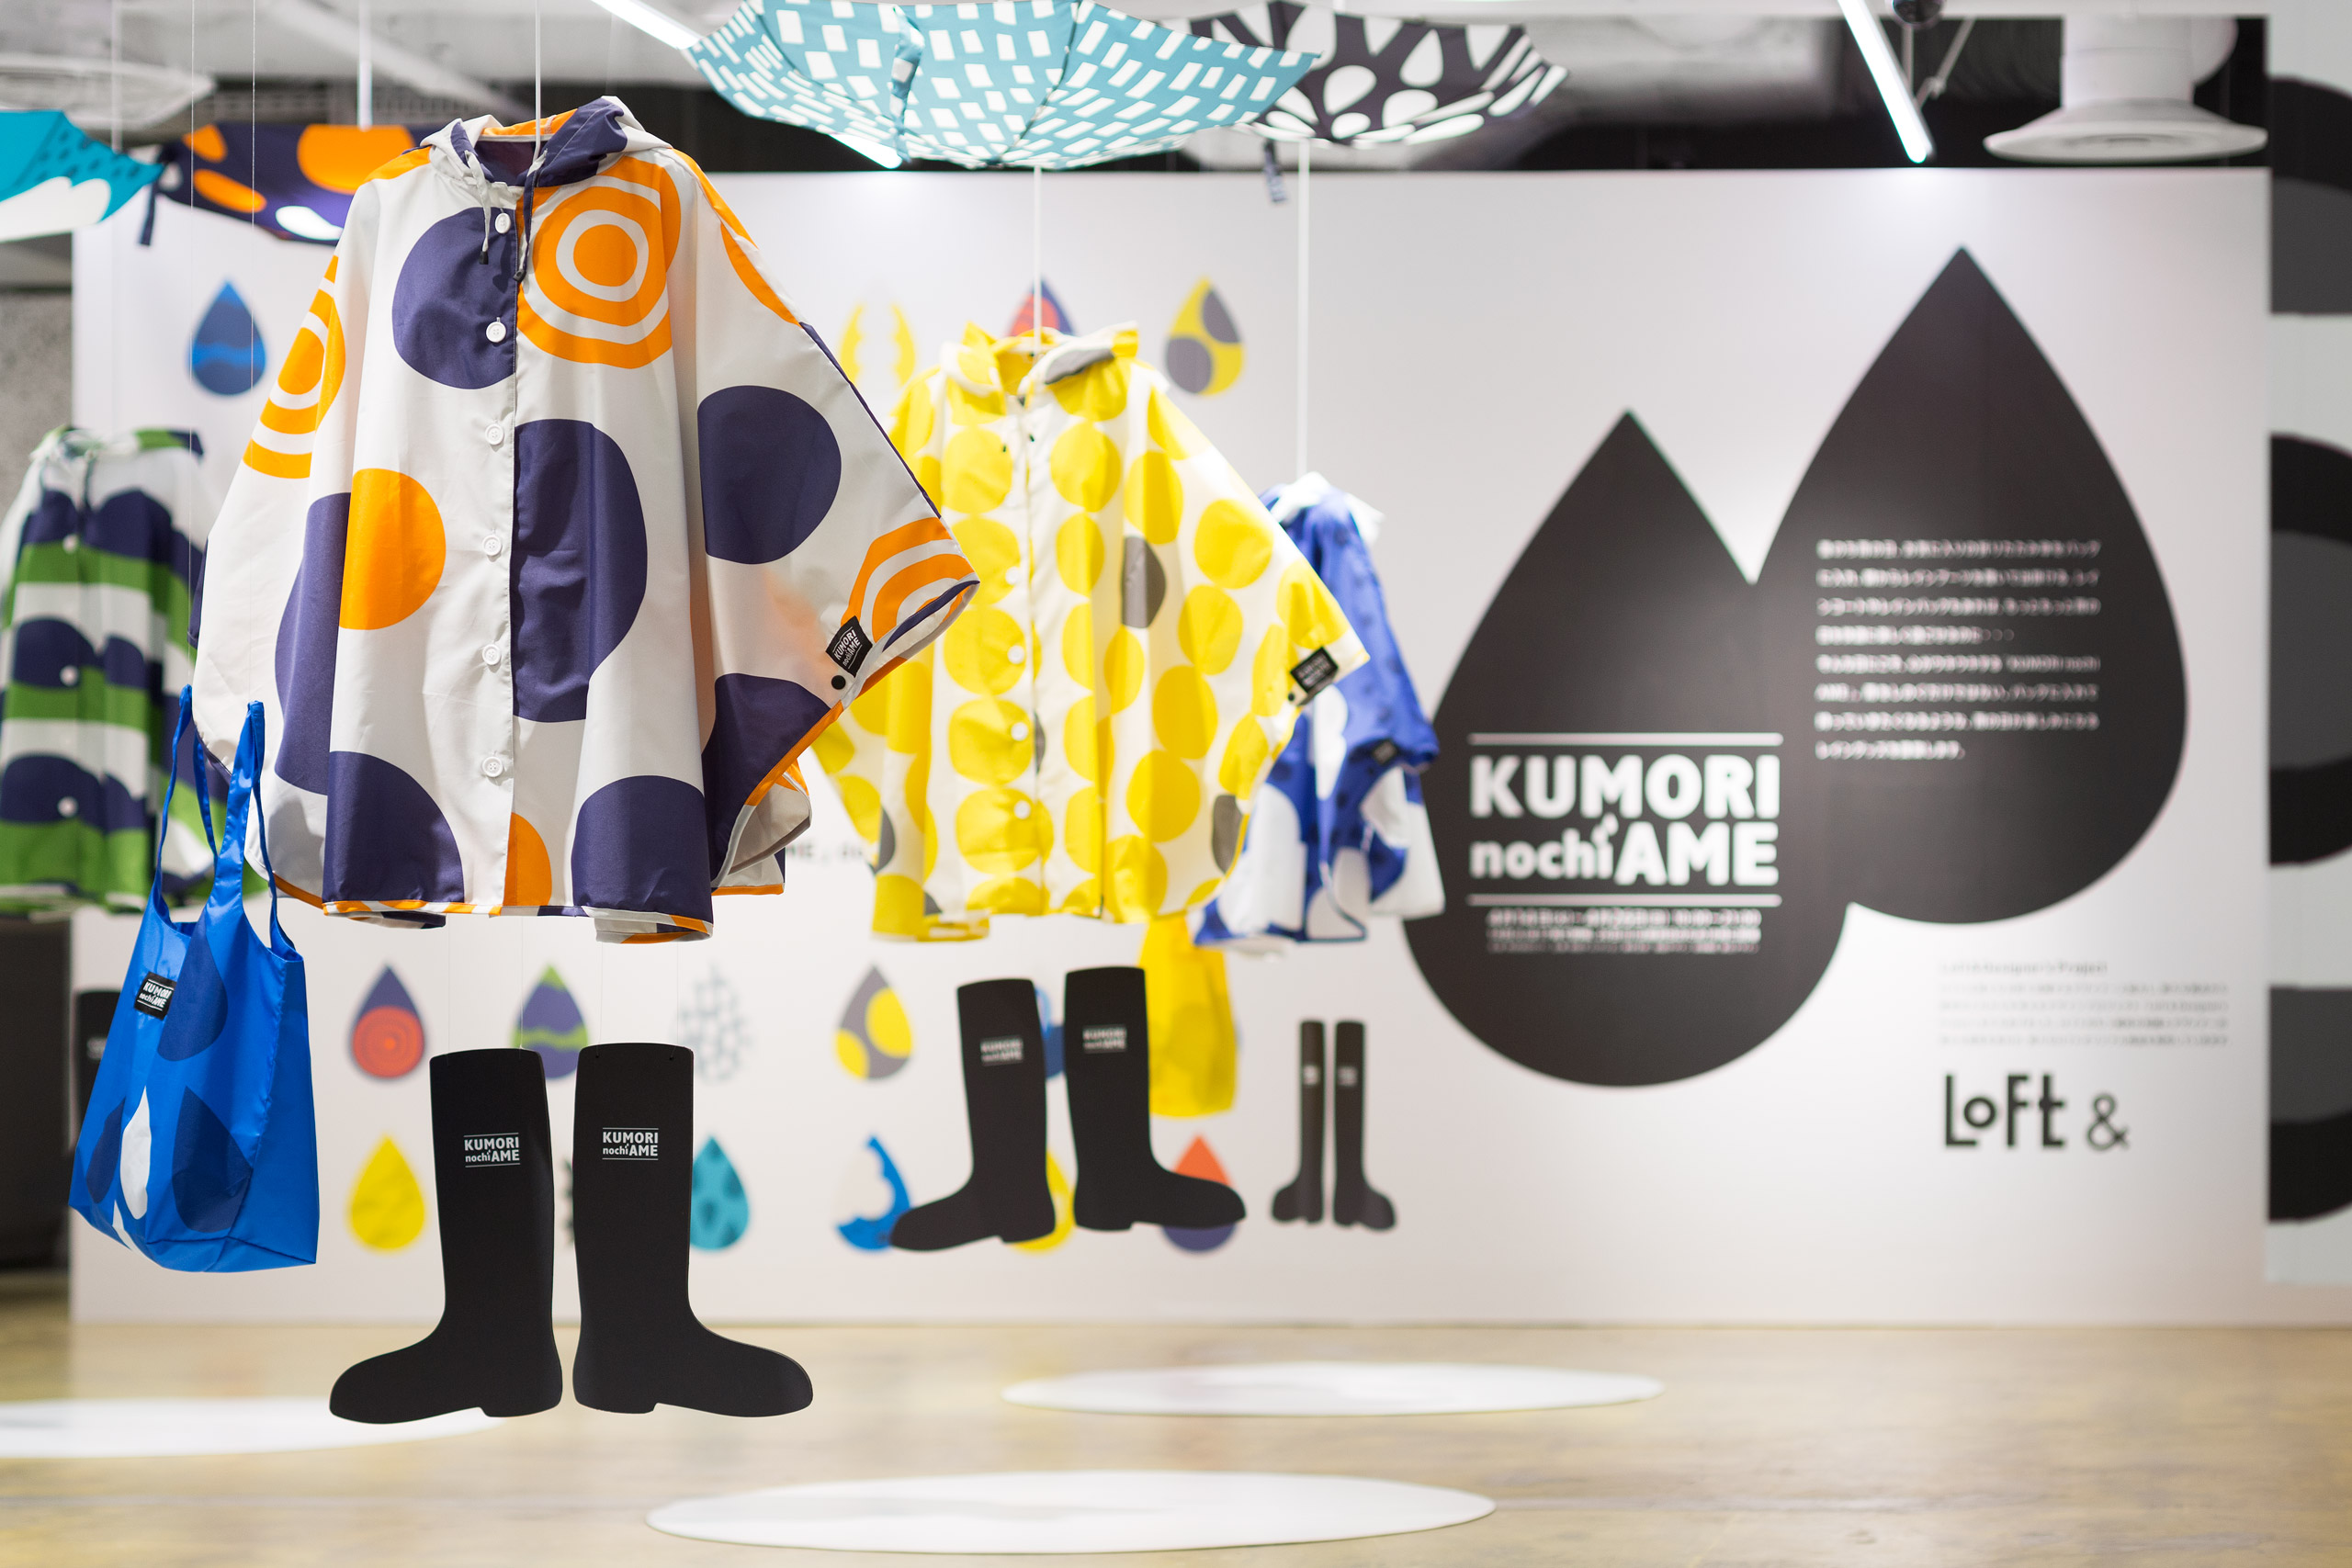 exhibition graphic KUMORI nochi AME 2015